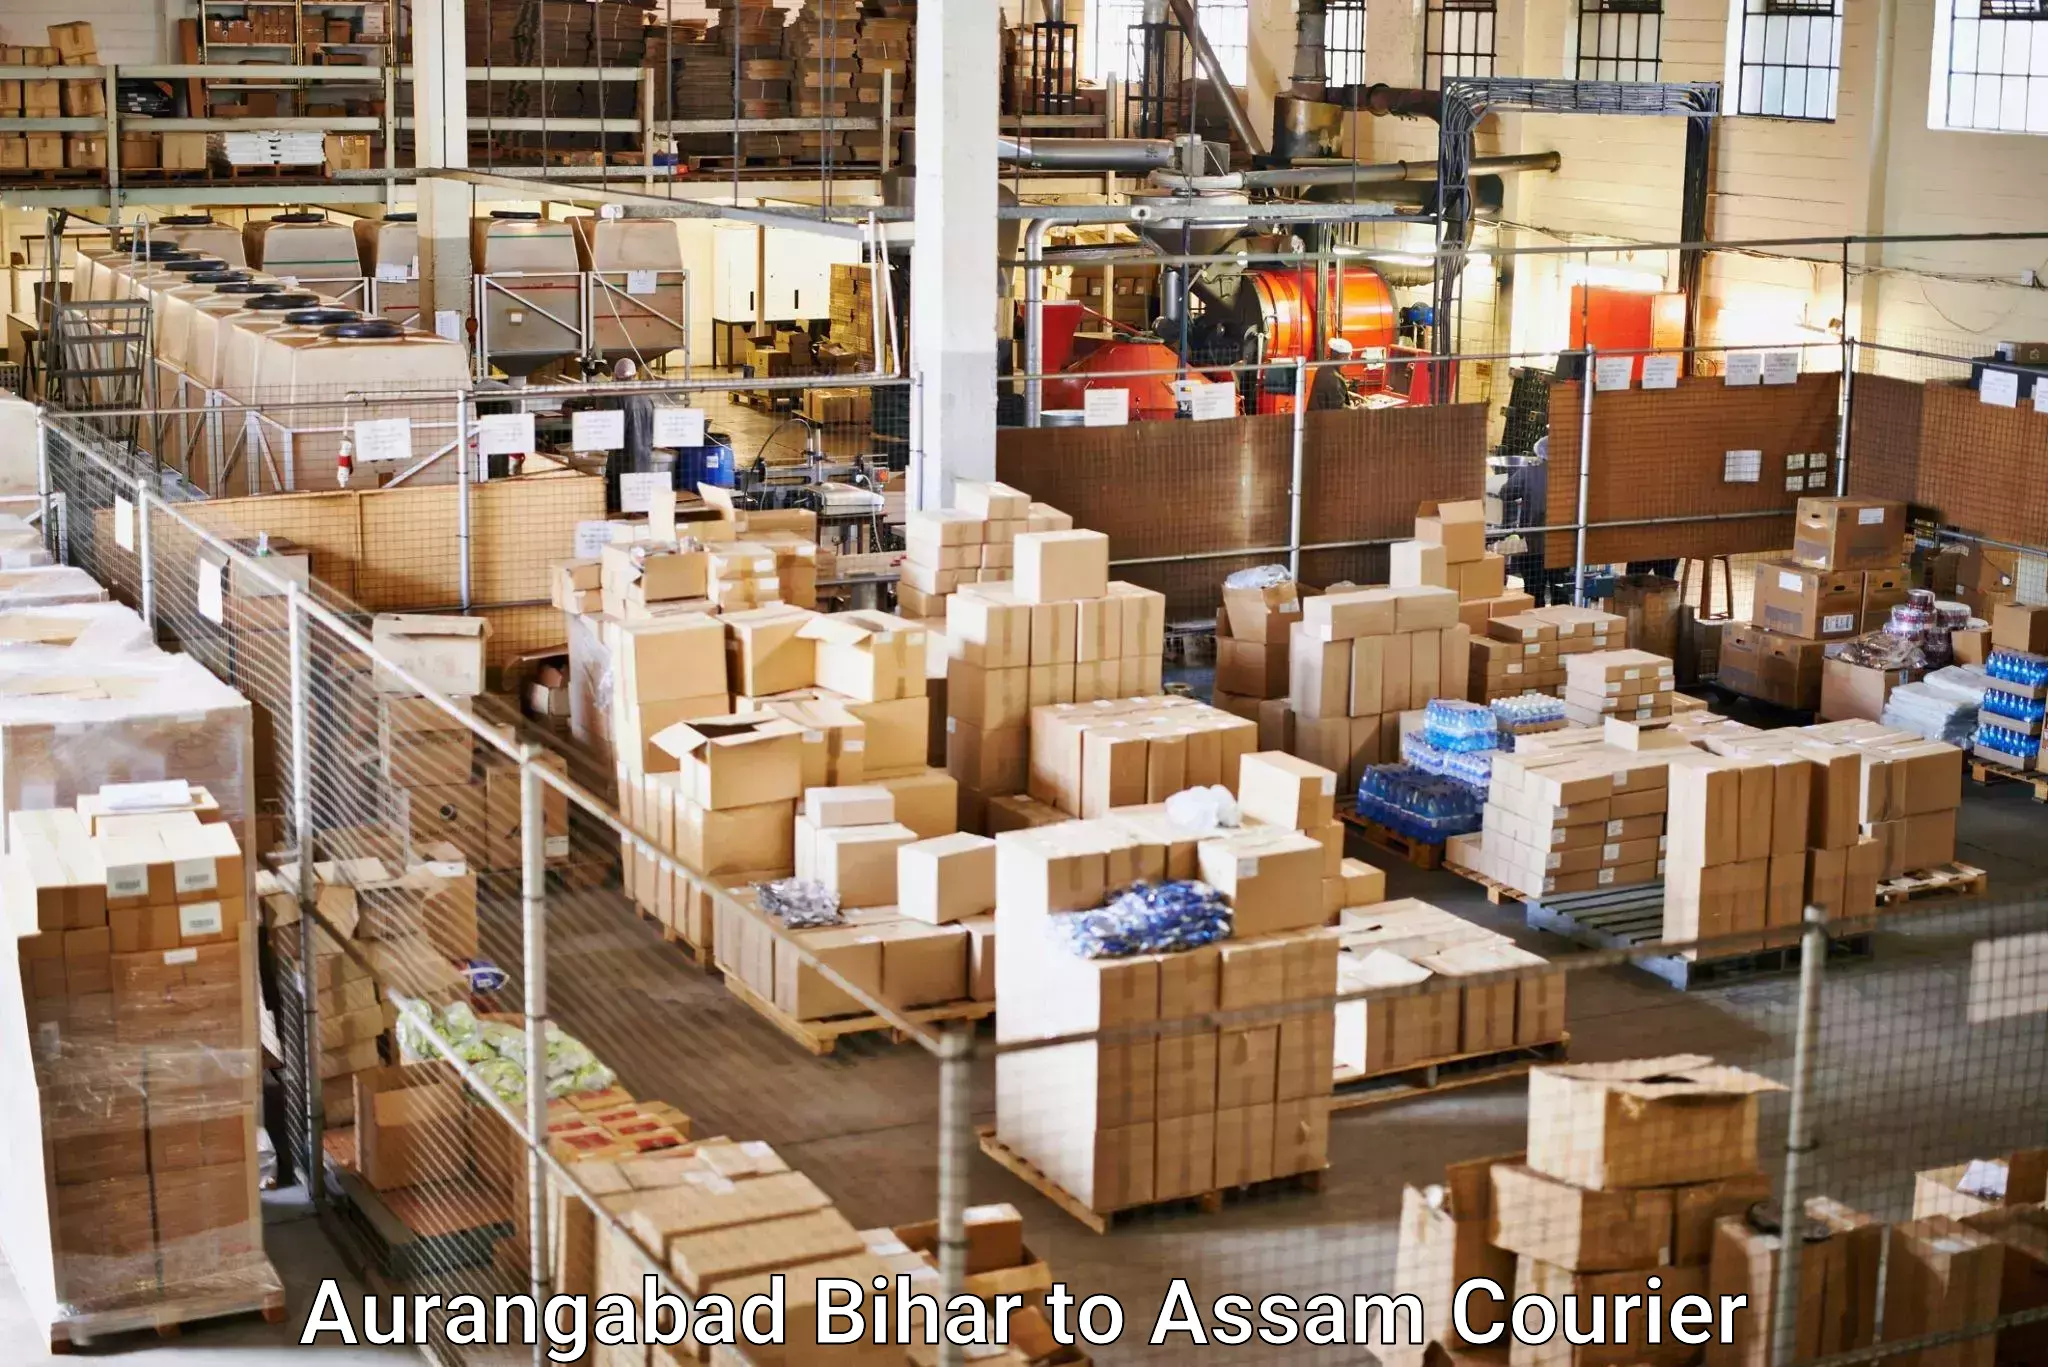 Small business couriers Aurangabad Bihar to Assam